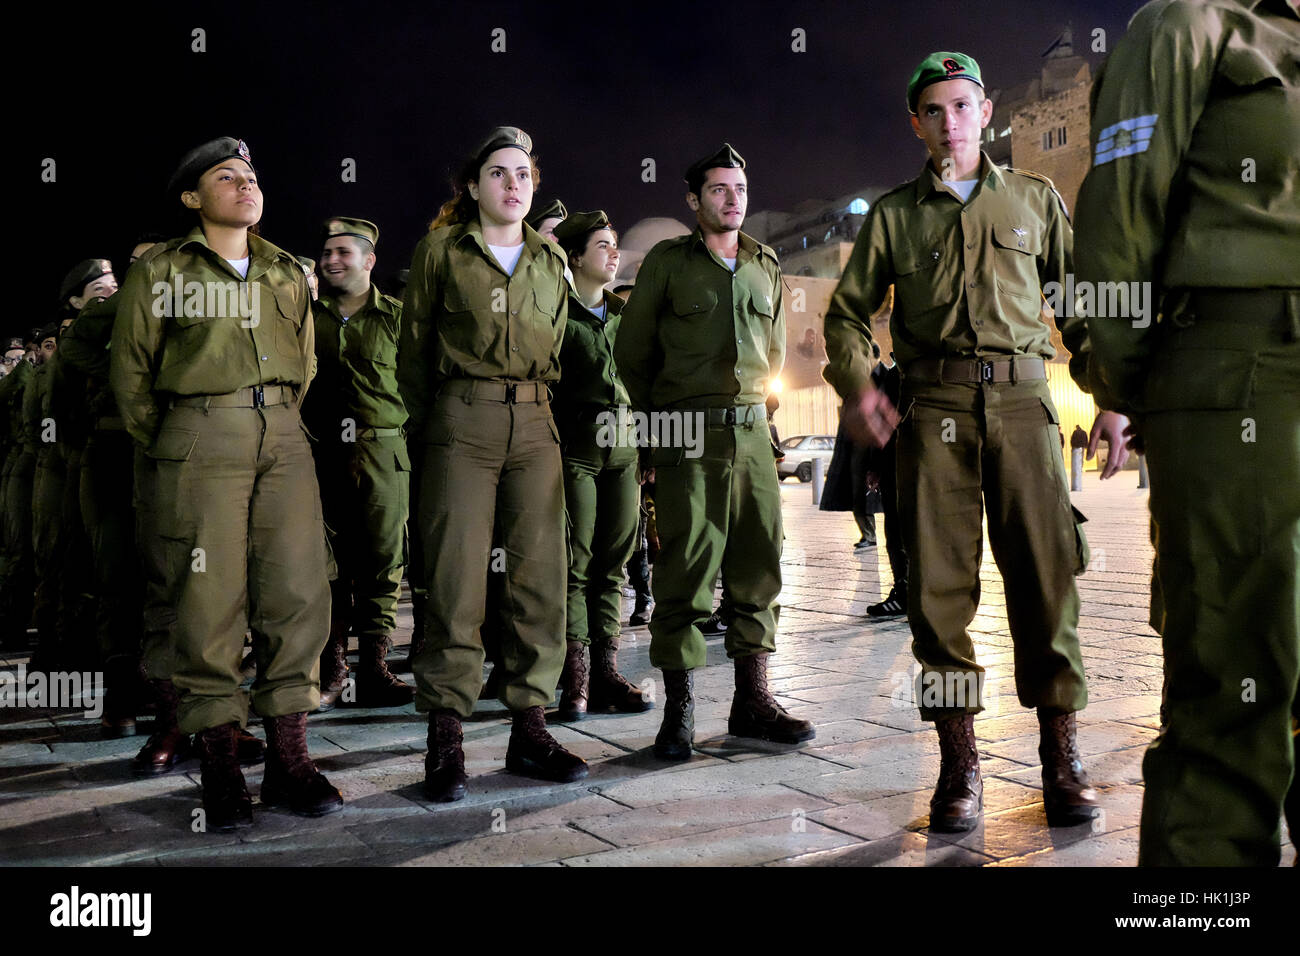 Jerusalén, Israel. 25 de enero de 2017. En medio de un acalorado debate  sobre el servicio militar de género mixto y la integración de los hombres  judíos ultra ortodoxos en el ejército,